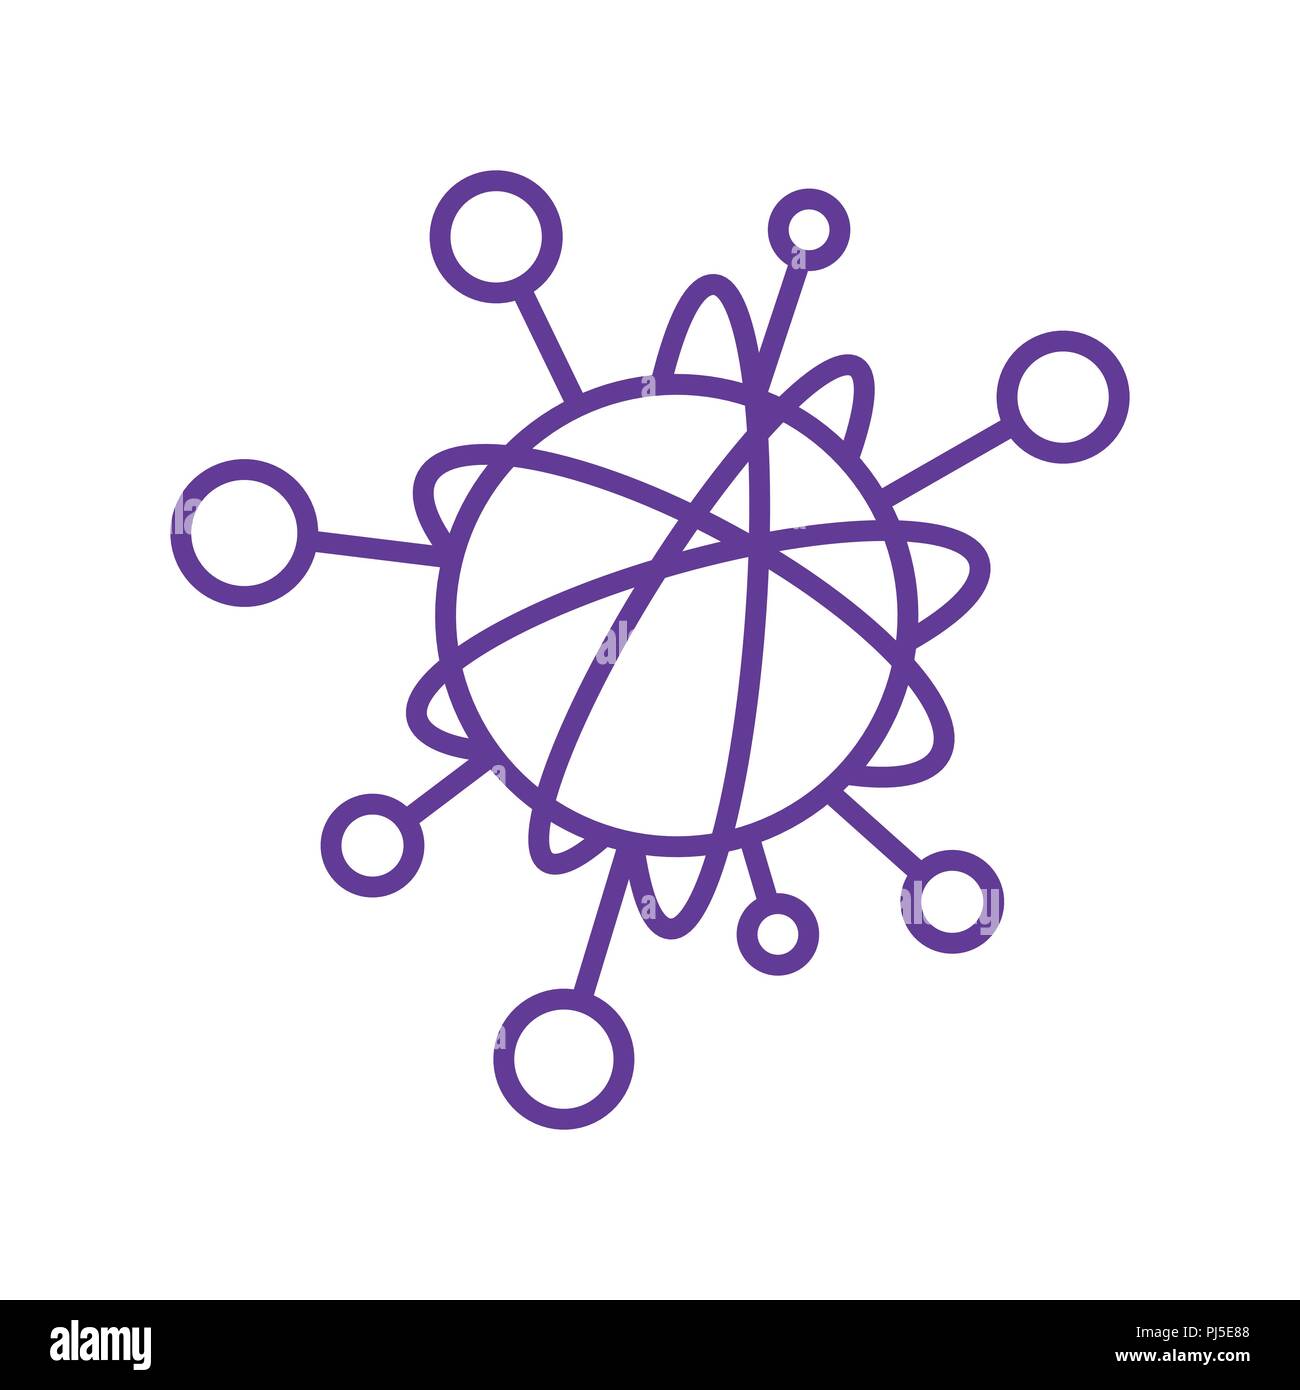 Linea semplice icona per rappresentare la Internet delle cose concetto. Una rete di objecs come dispositivi connessi tra di loro su internet. Isolato su sfondo bianco. Illustrazione Vettoriale